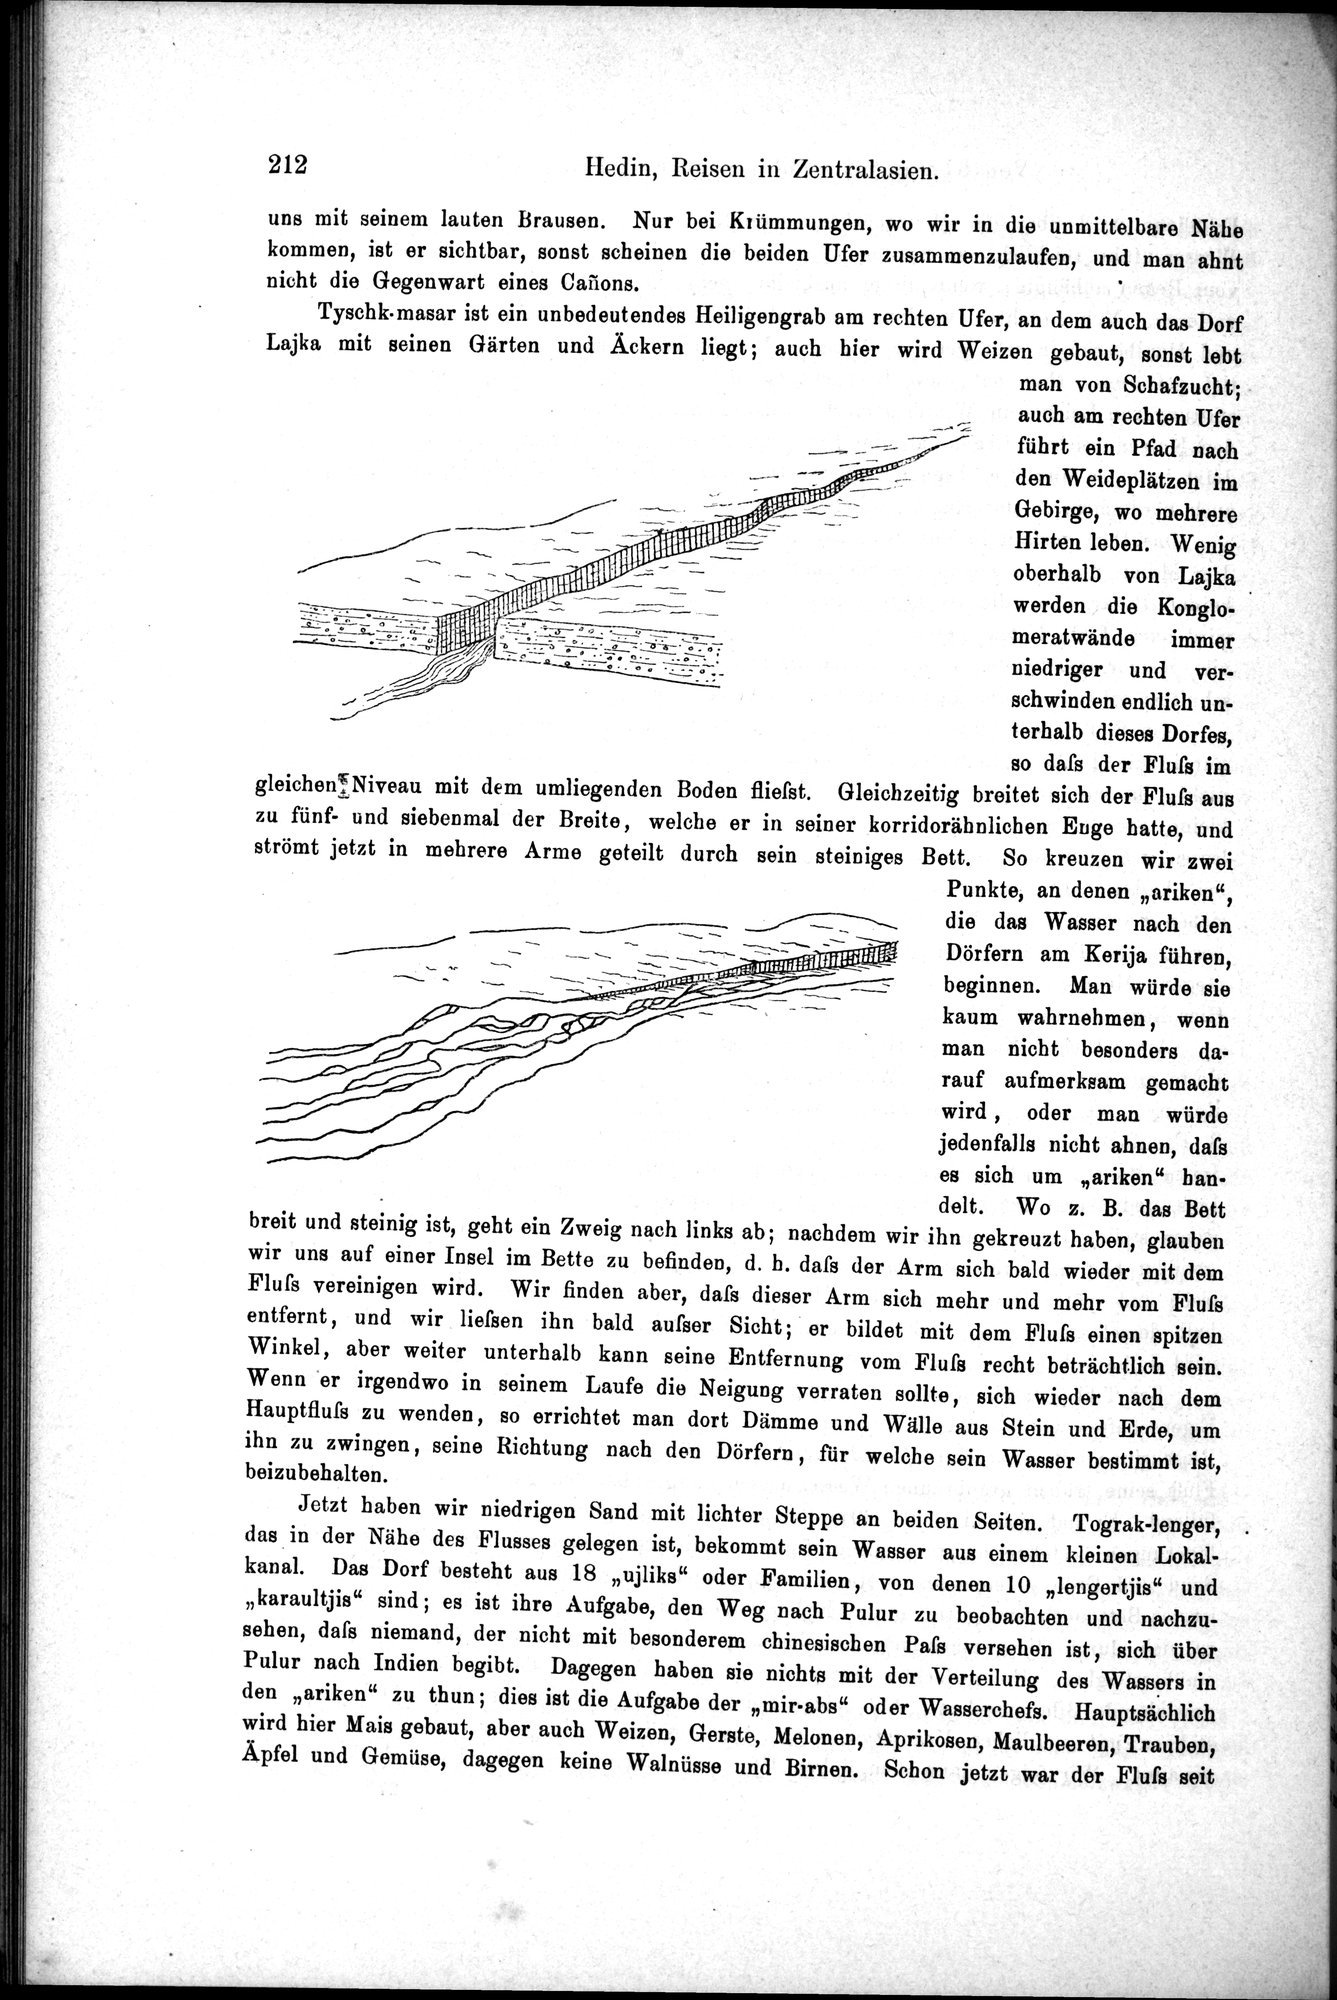 Die Geographische-Wissenschaftlichen Ergebnisse meiner Reisen in Zentralasien, 1894-1897 : vol.1 / Page 224 (Grayscale High Resolution Image)